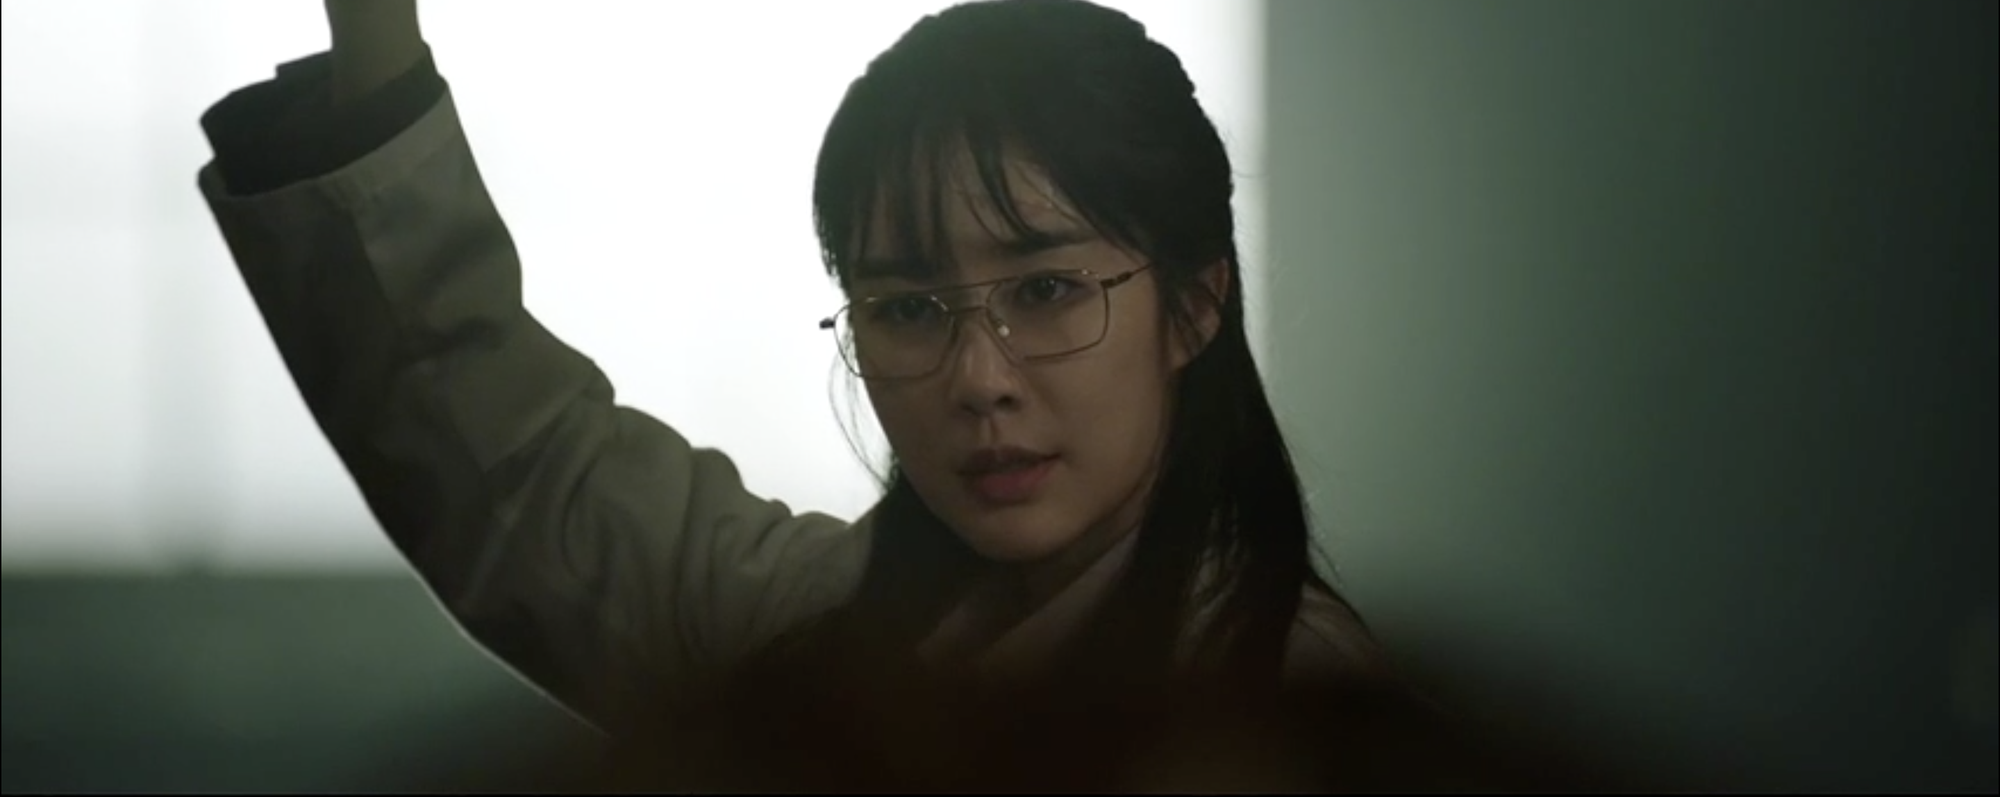 Snowdrop tập 10 tức sôi máu: Jisoo (BLACKPINK) bị tình địch tát sấp mặt, Jung Hae In bất lực đứng nhìn - Ảnh 1.